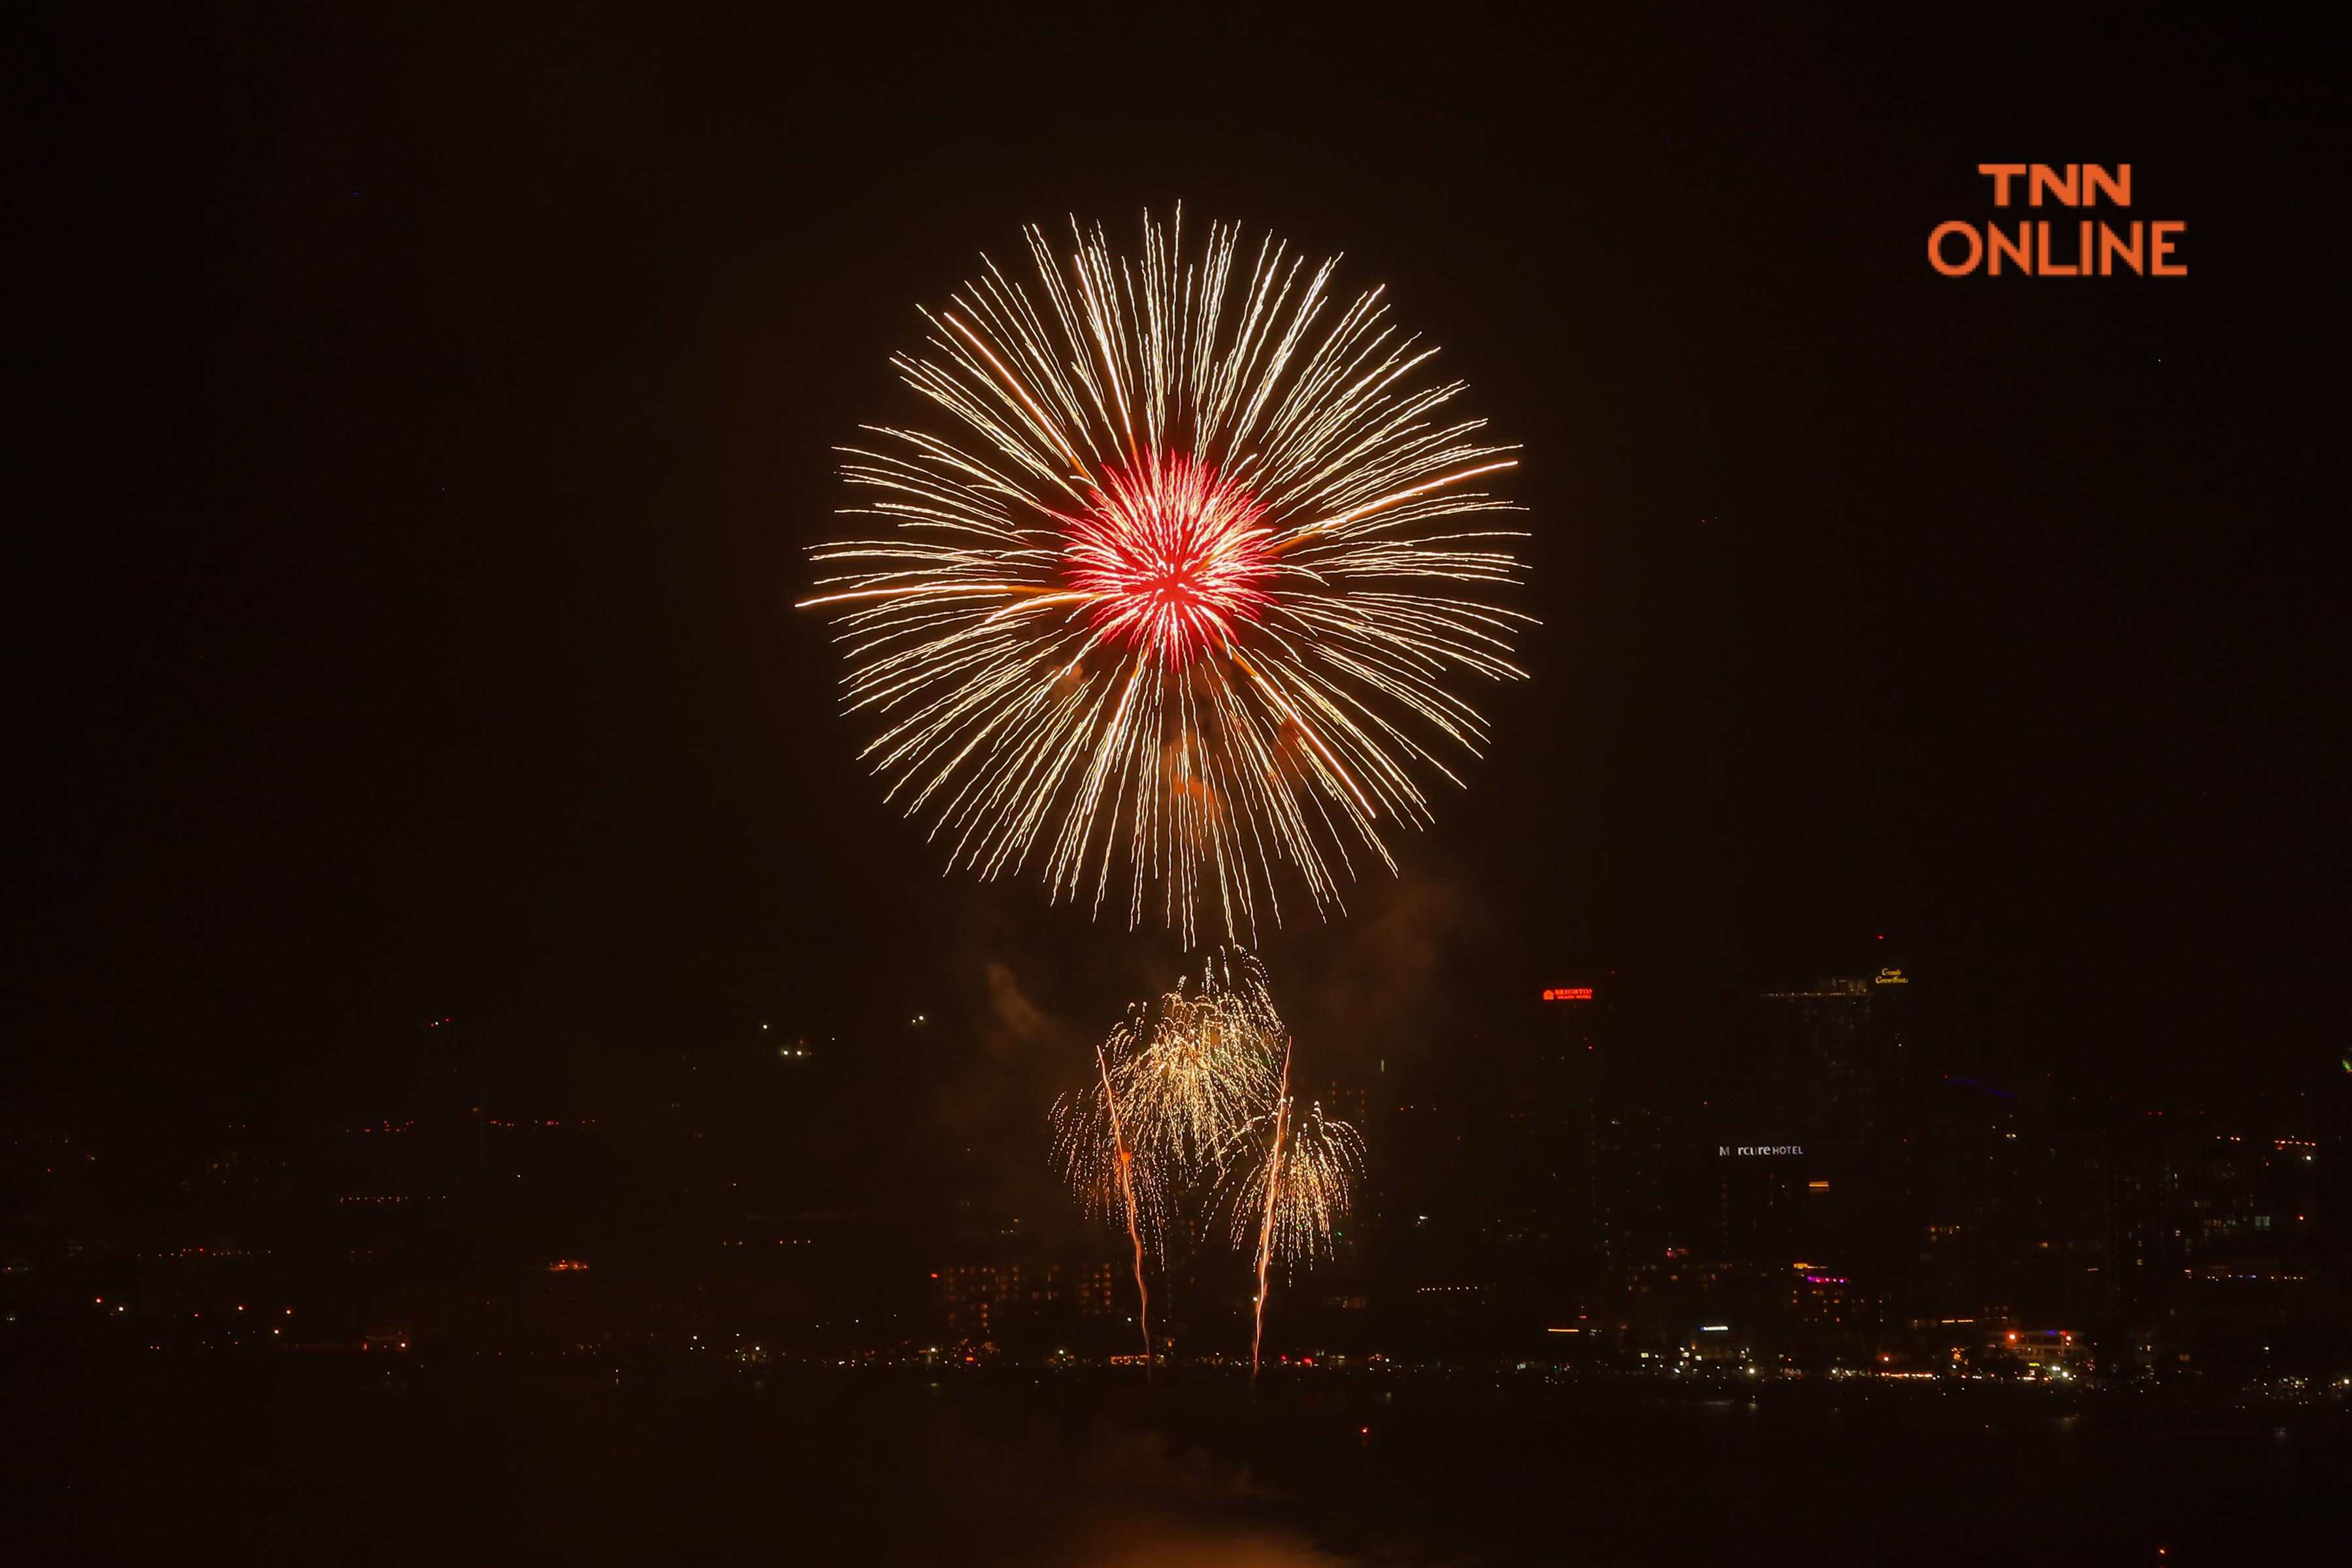 ประมวลภาพ พลุพัทยา “Pattaya International Fireworks Festival 2021”